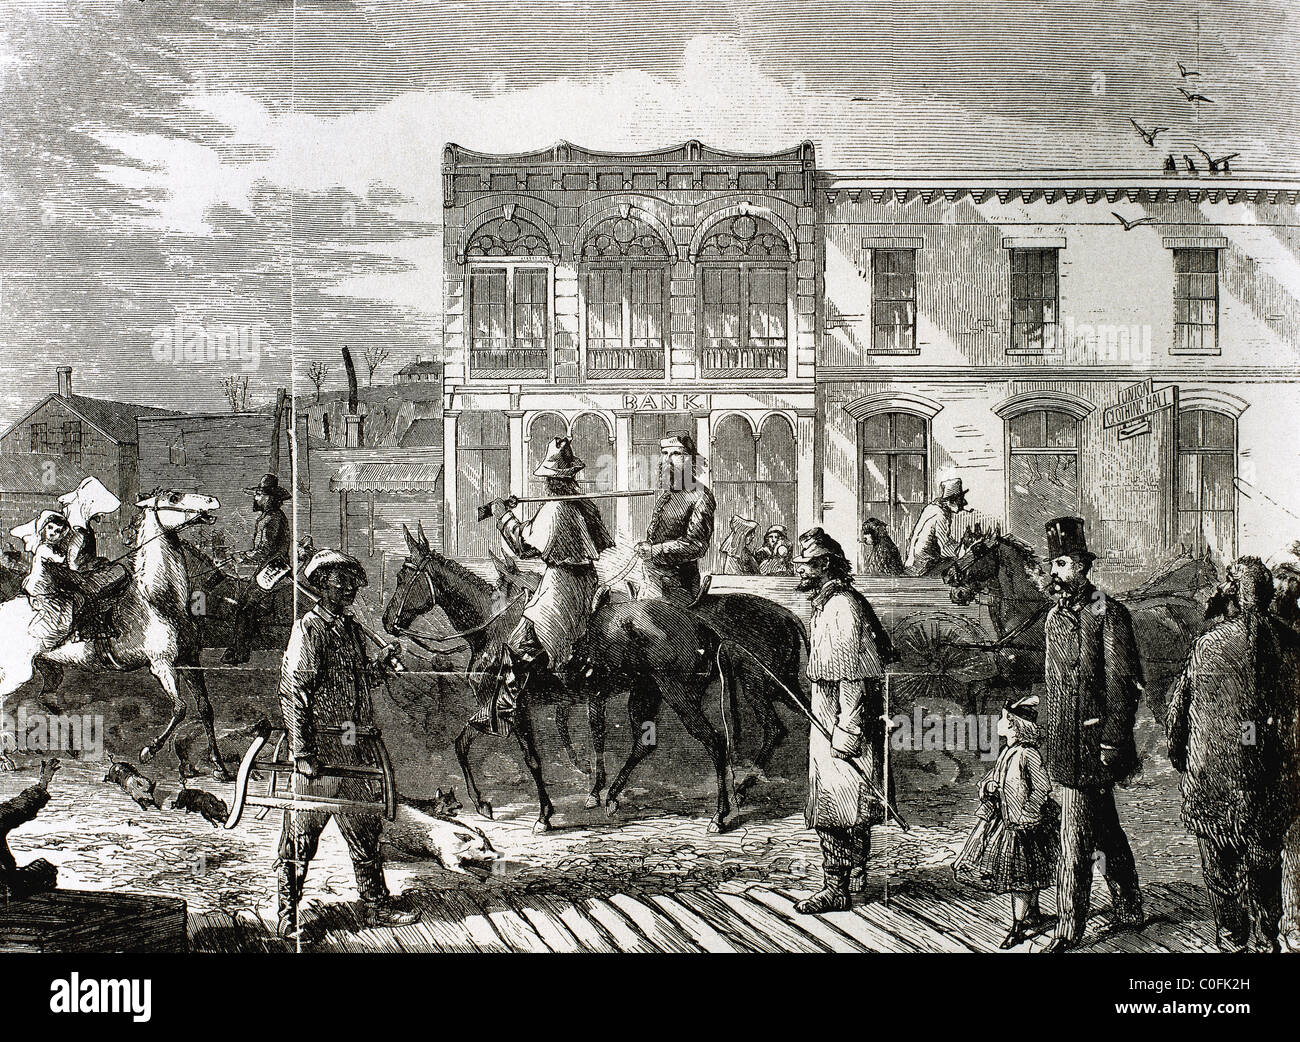 United States. 19e siècle. Atchinson City (Kansas) ans après la guerre civile américaine. Gravure de "Harper's Weekly" (1866). Banque D'Images